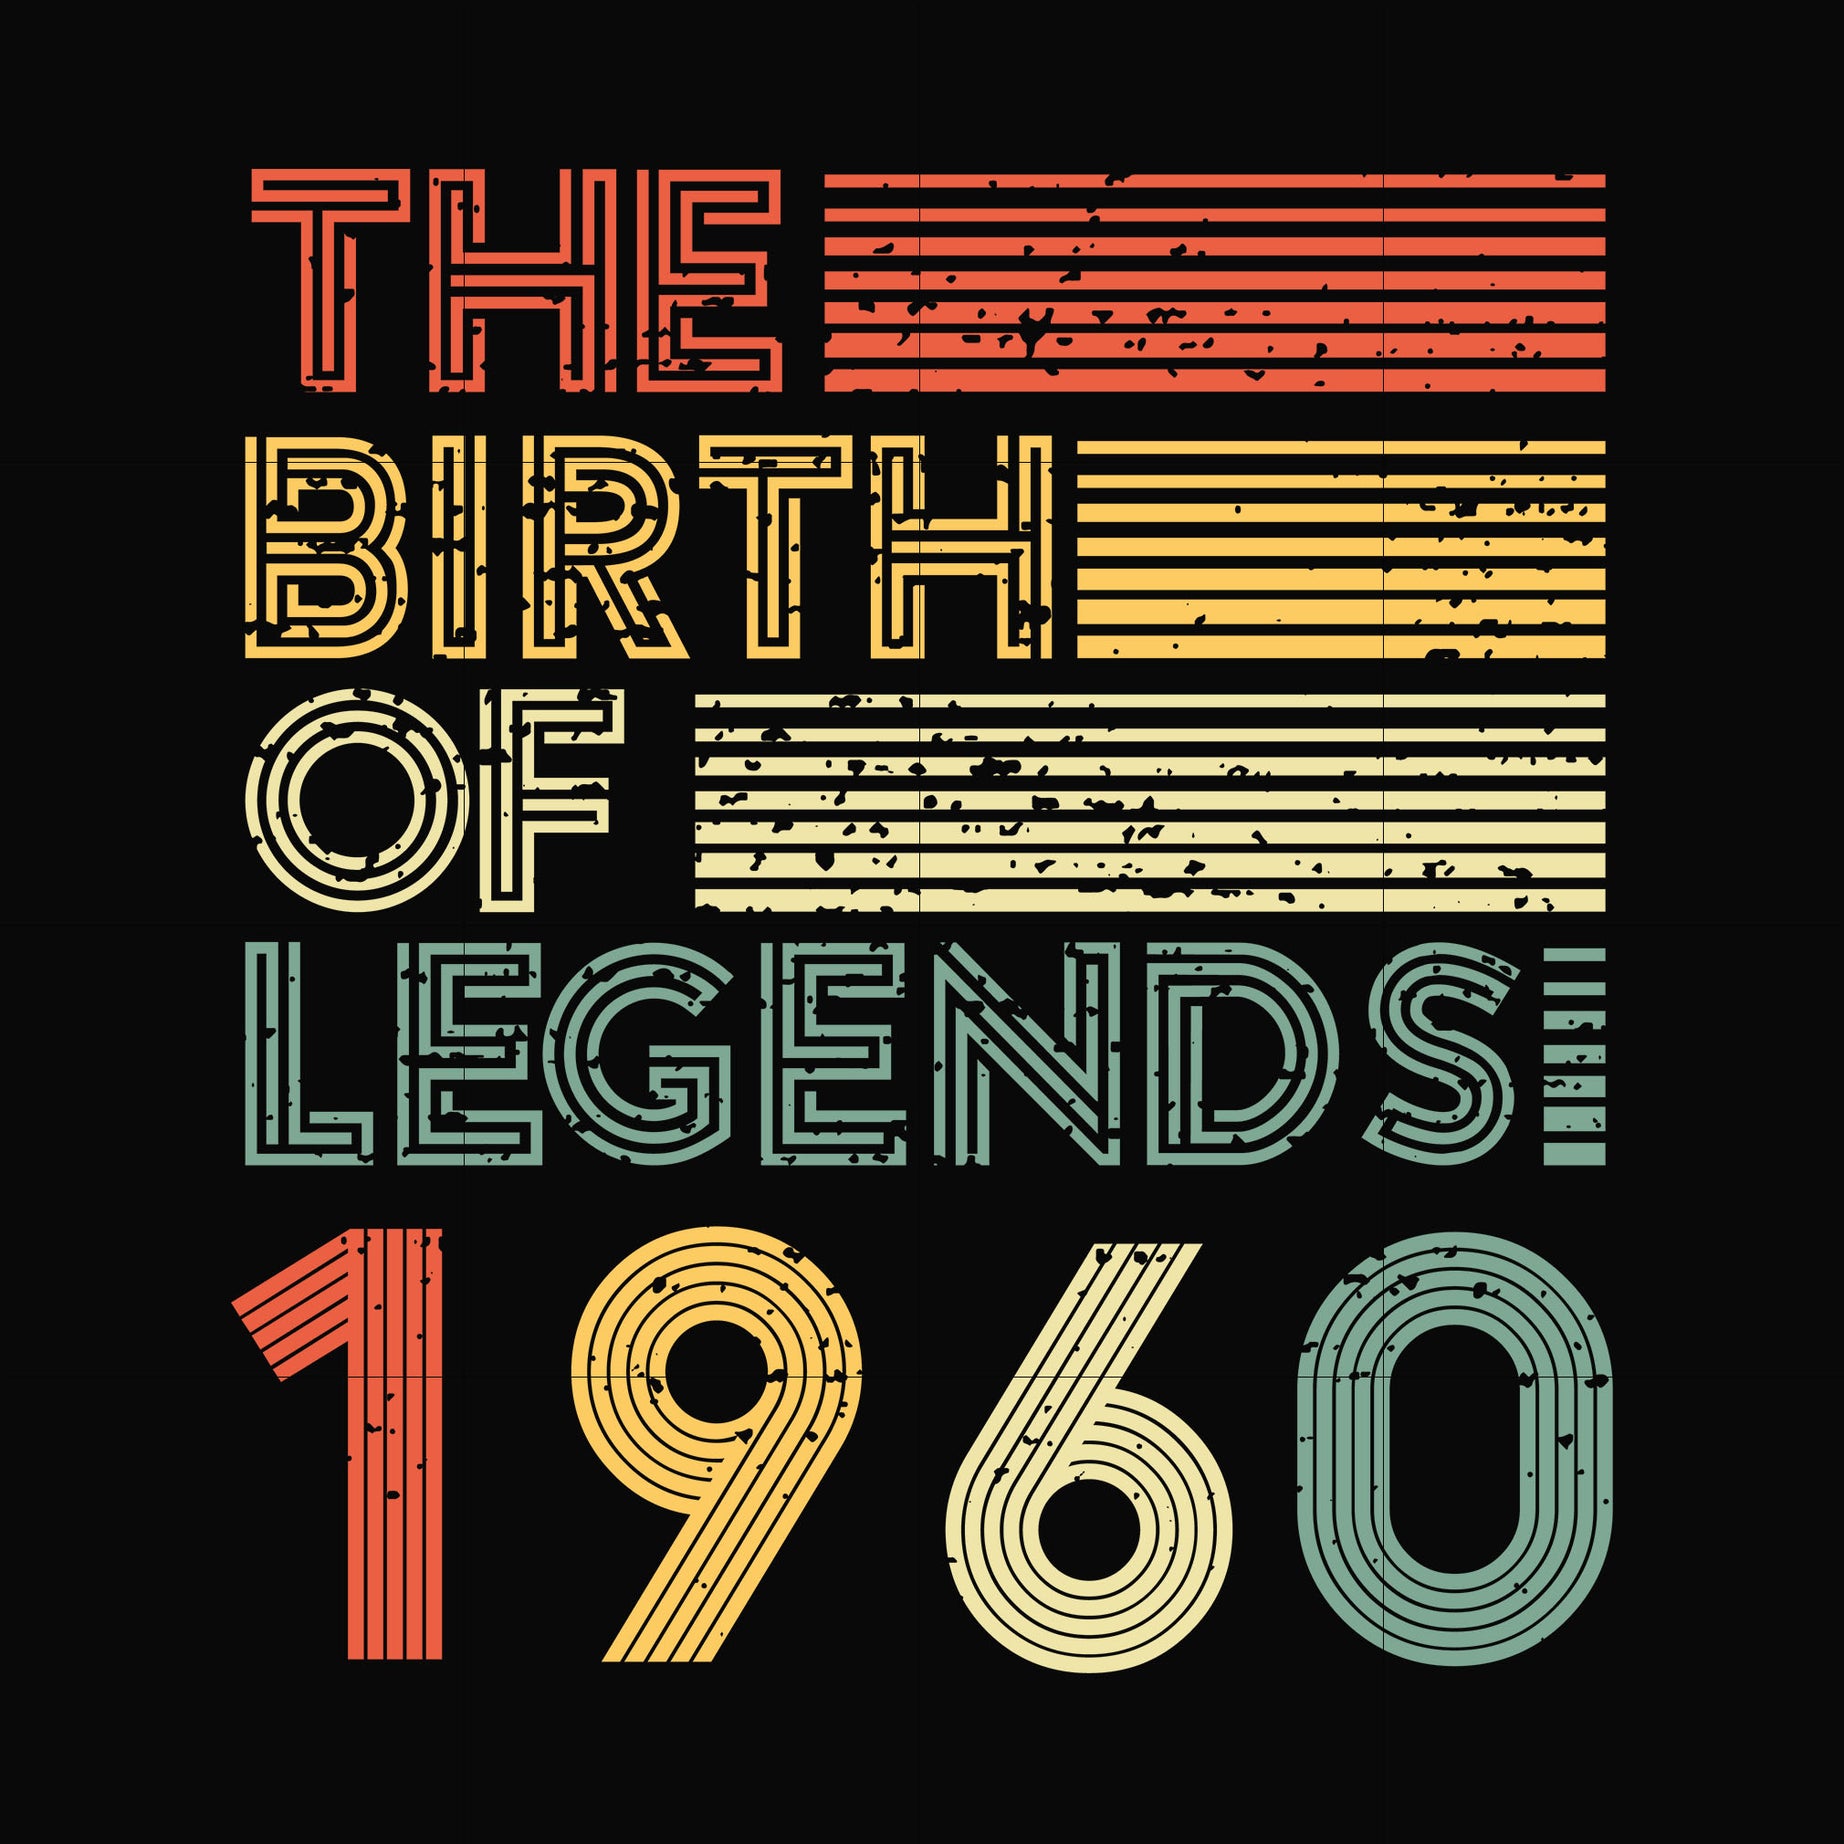 The birth of legends 1960 svg, png, dxf, eps digital file NBD0062